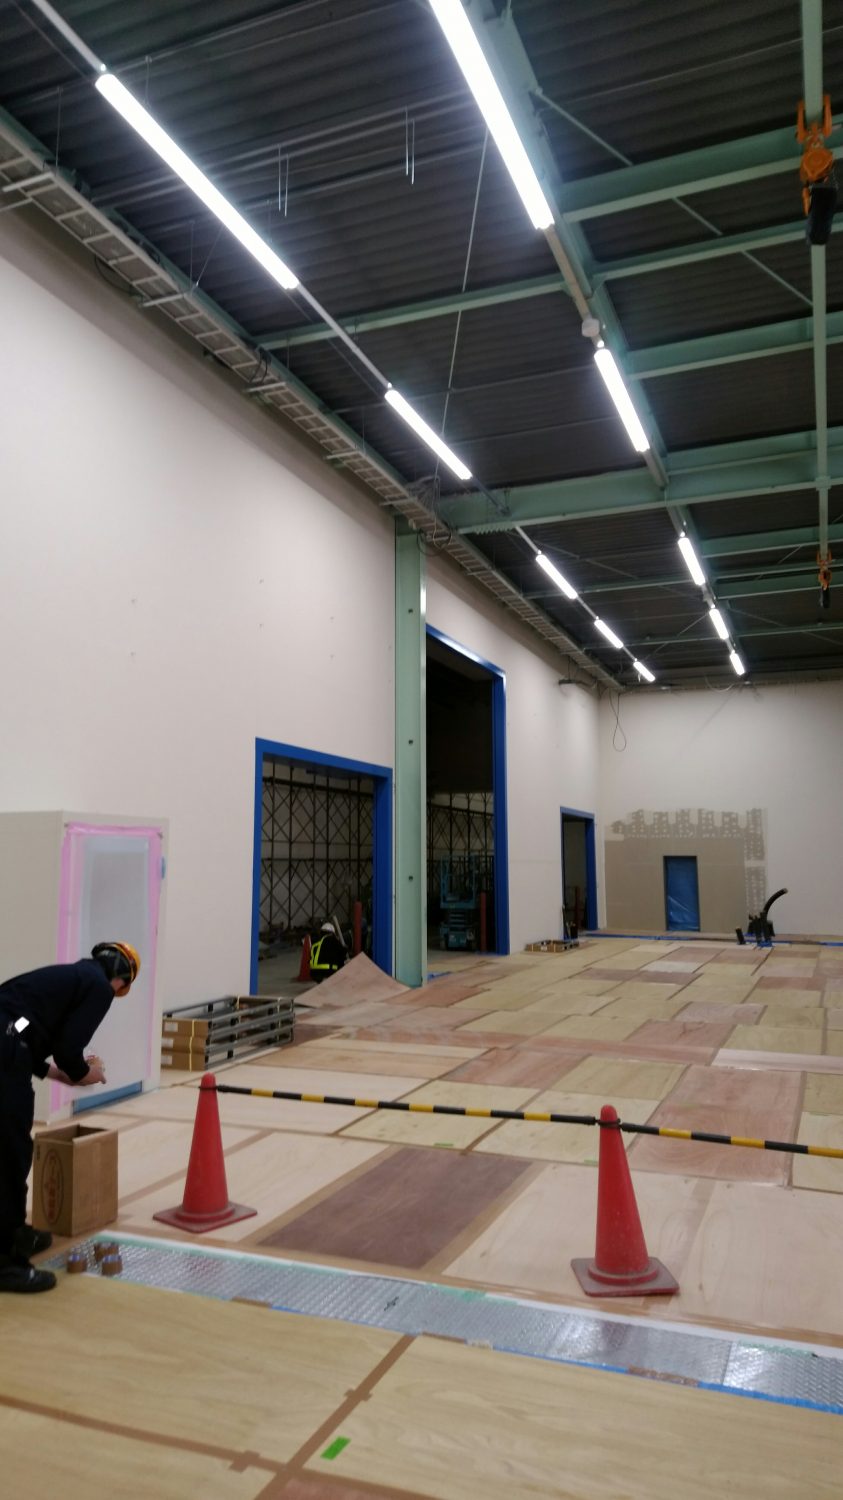 坂東市の工場の内部塗装完成間近です。